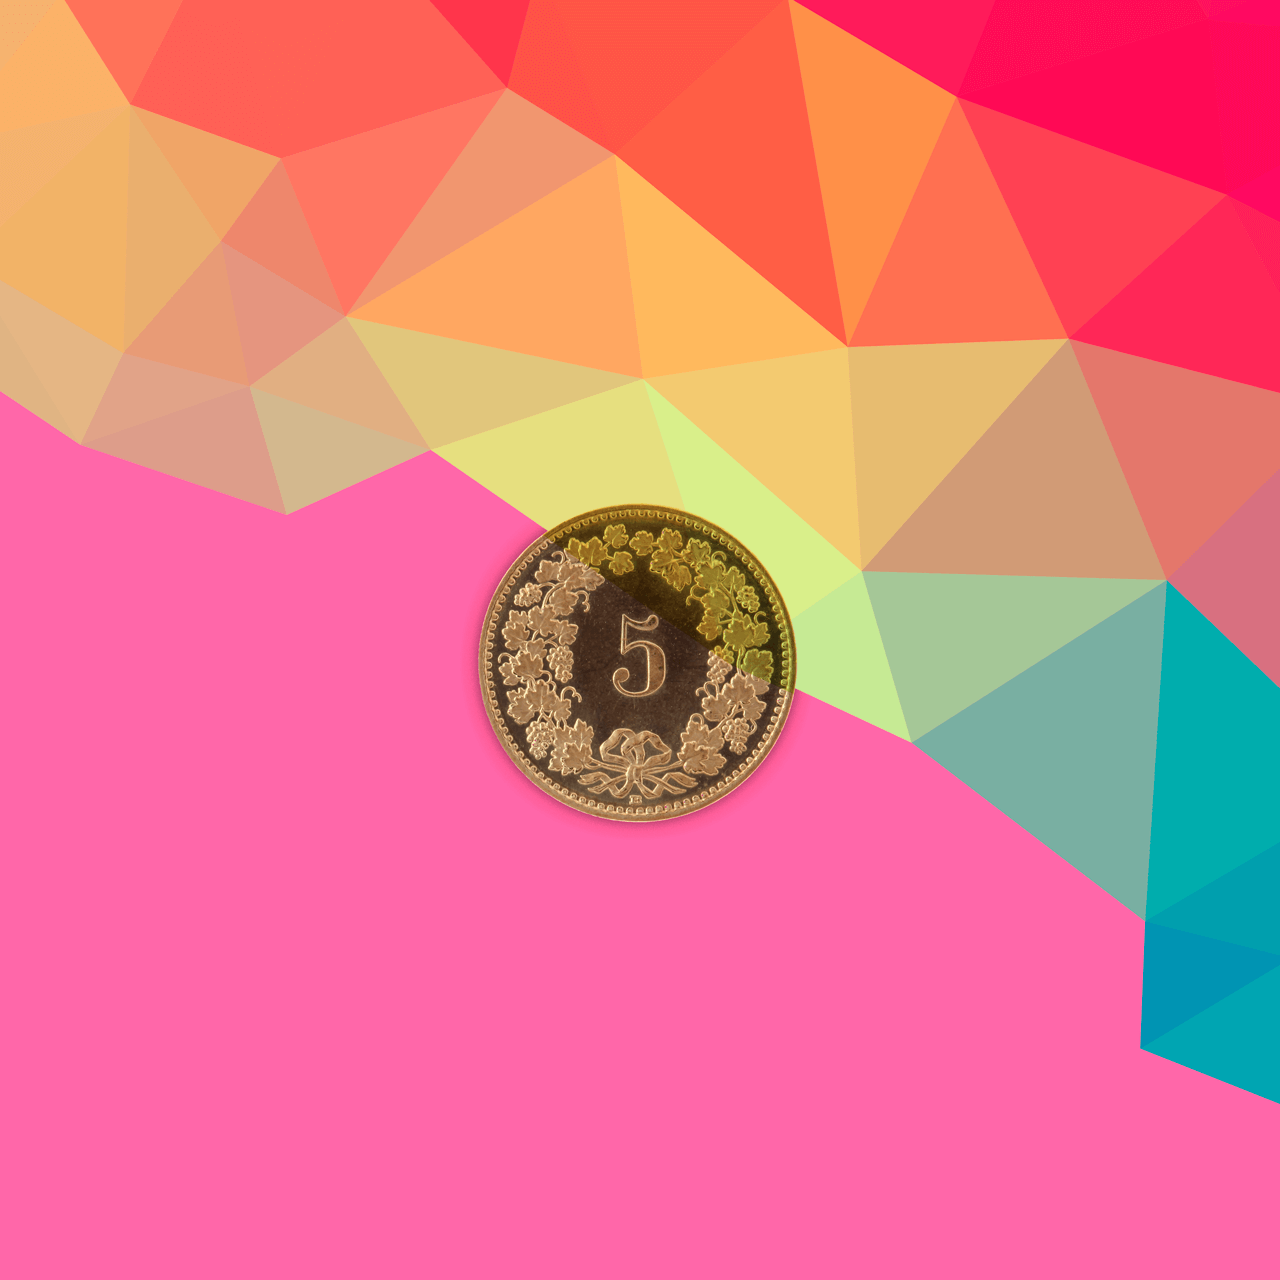 Bild mit Münze, das die Erschwinglichkeit des Onlineshops symbolisiert